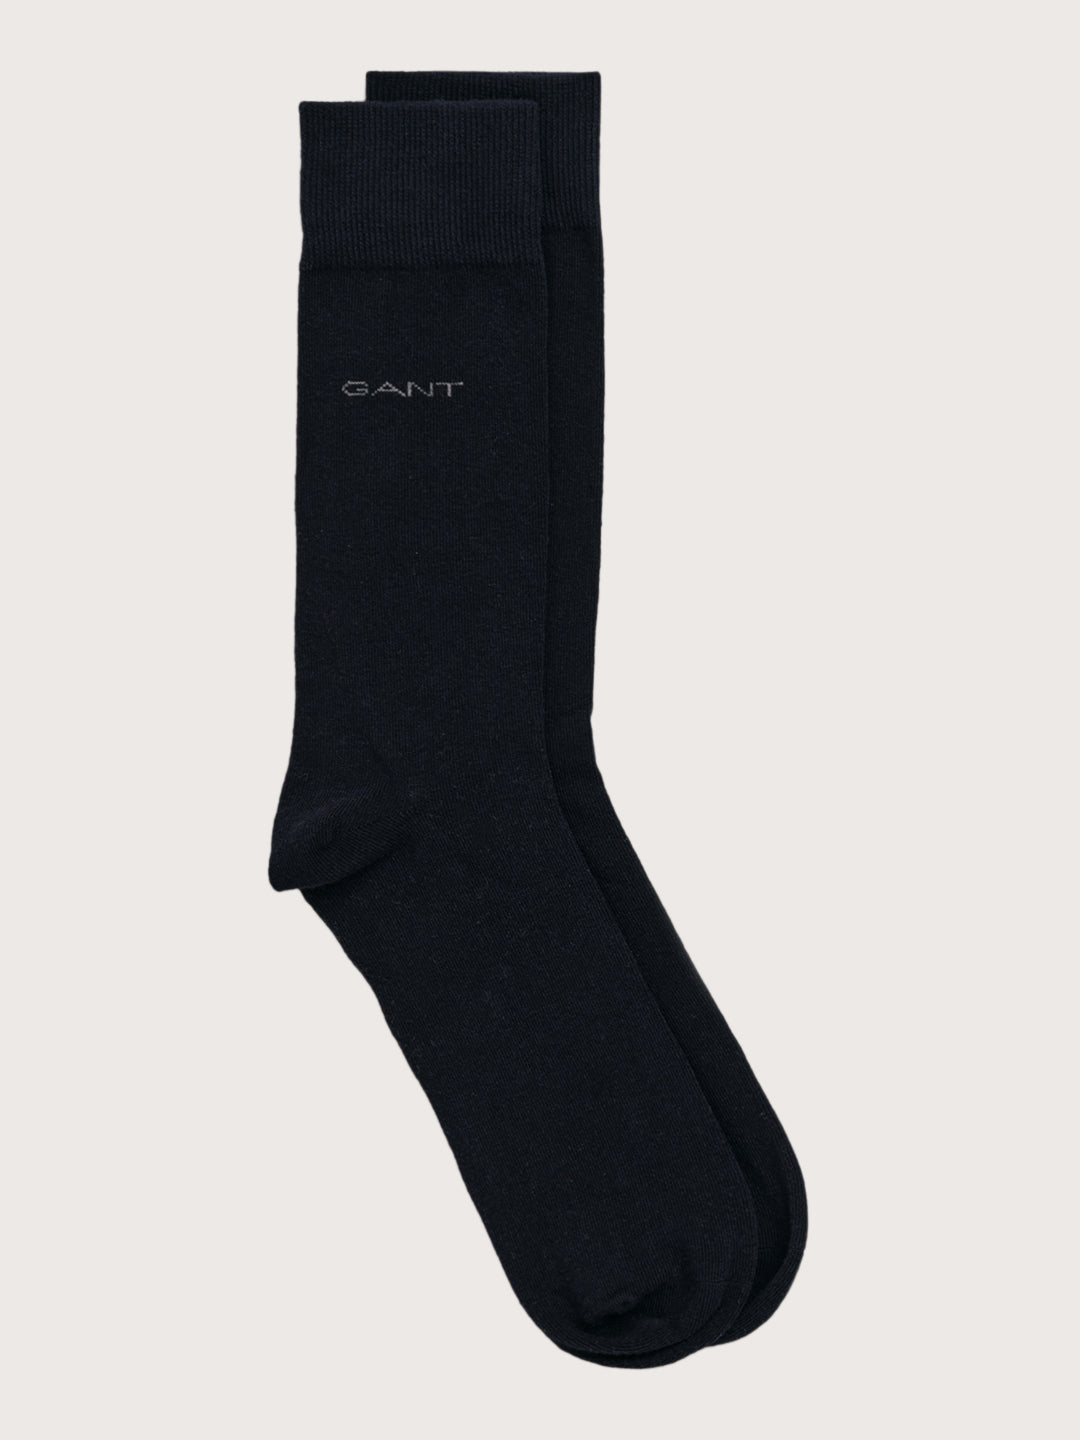 Gant Pack of 3 Patterned Above Knee Length Socks